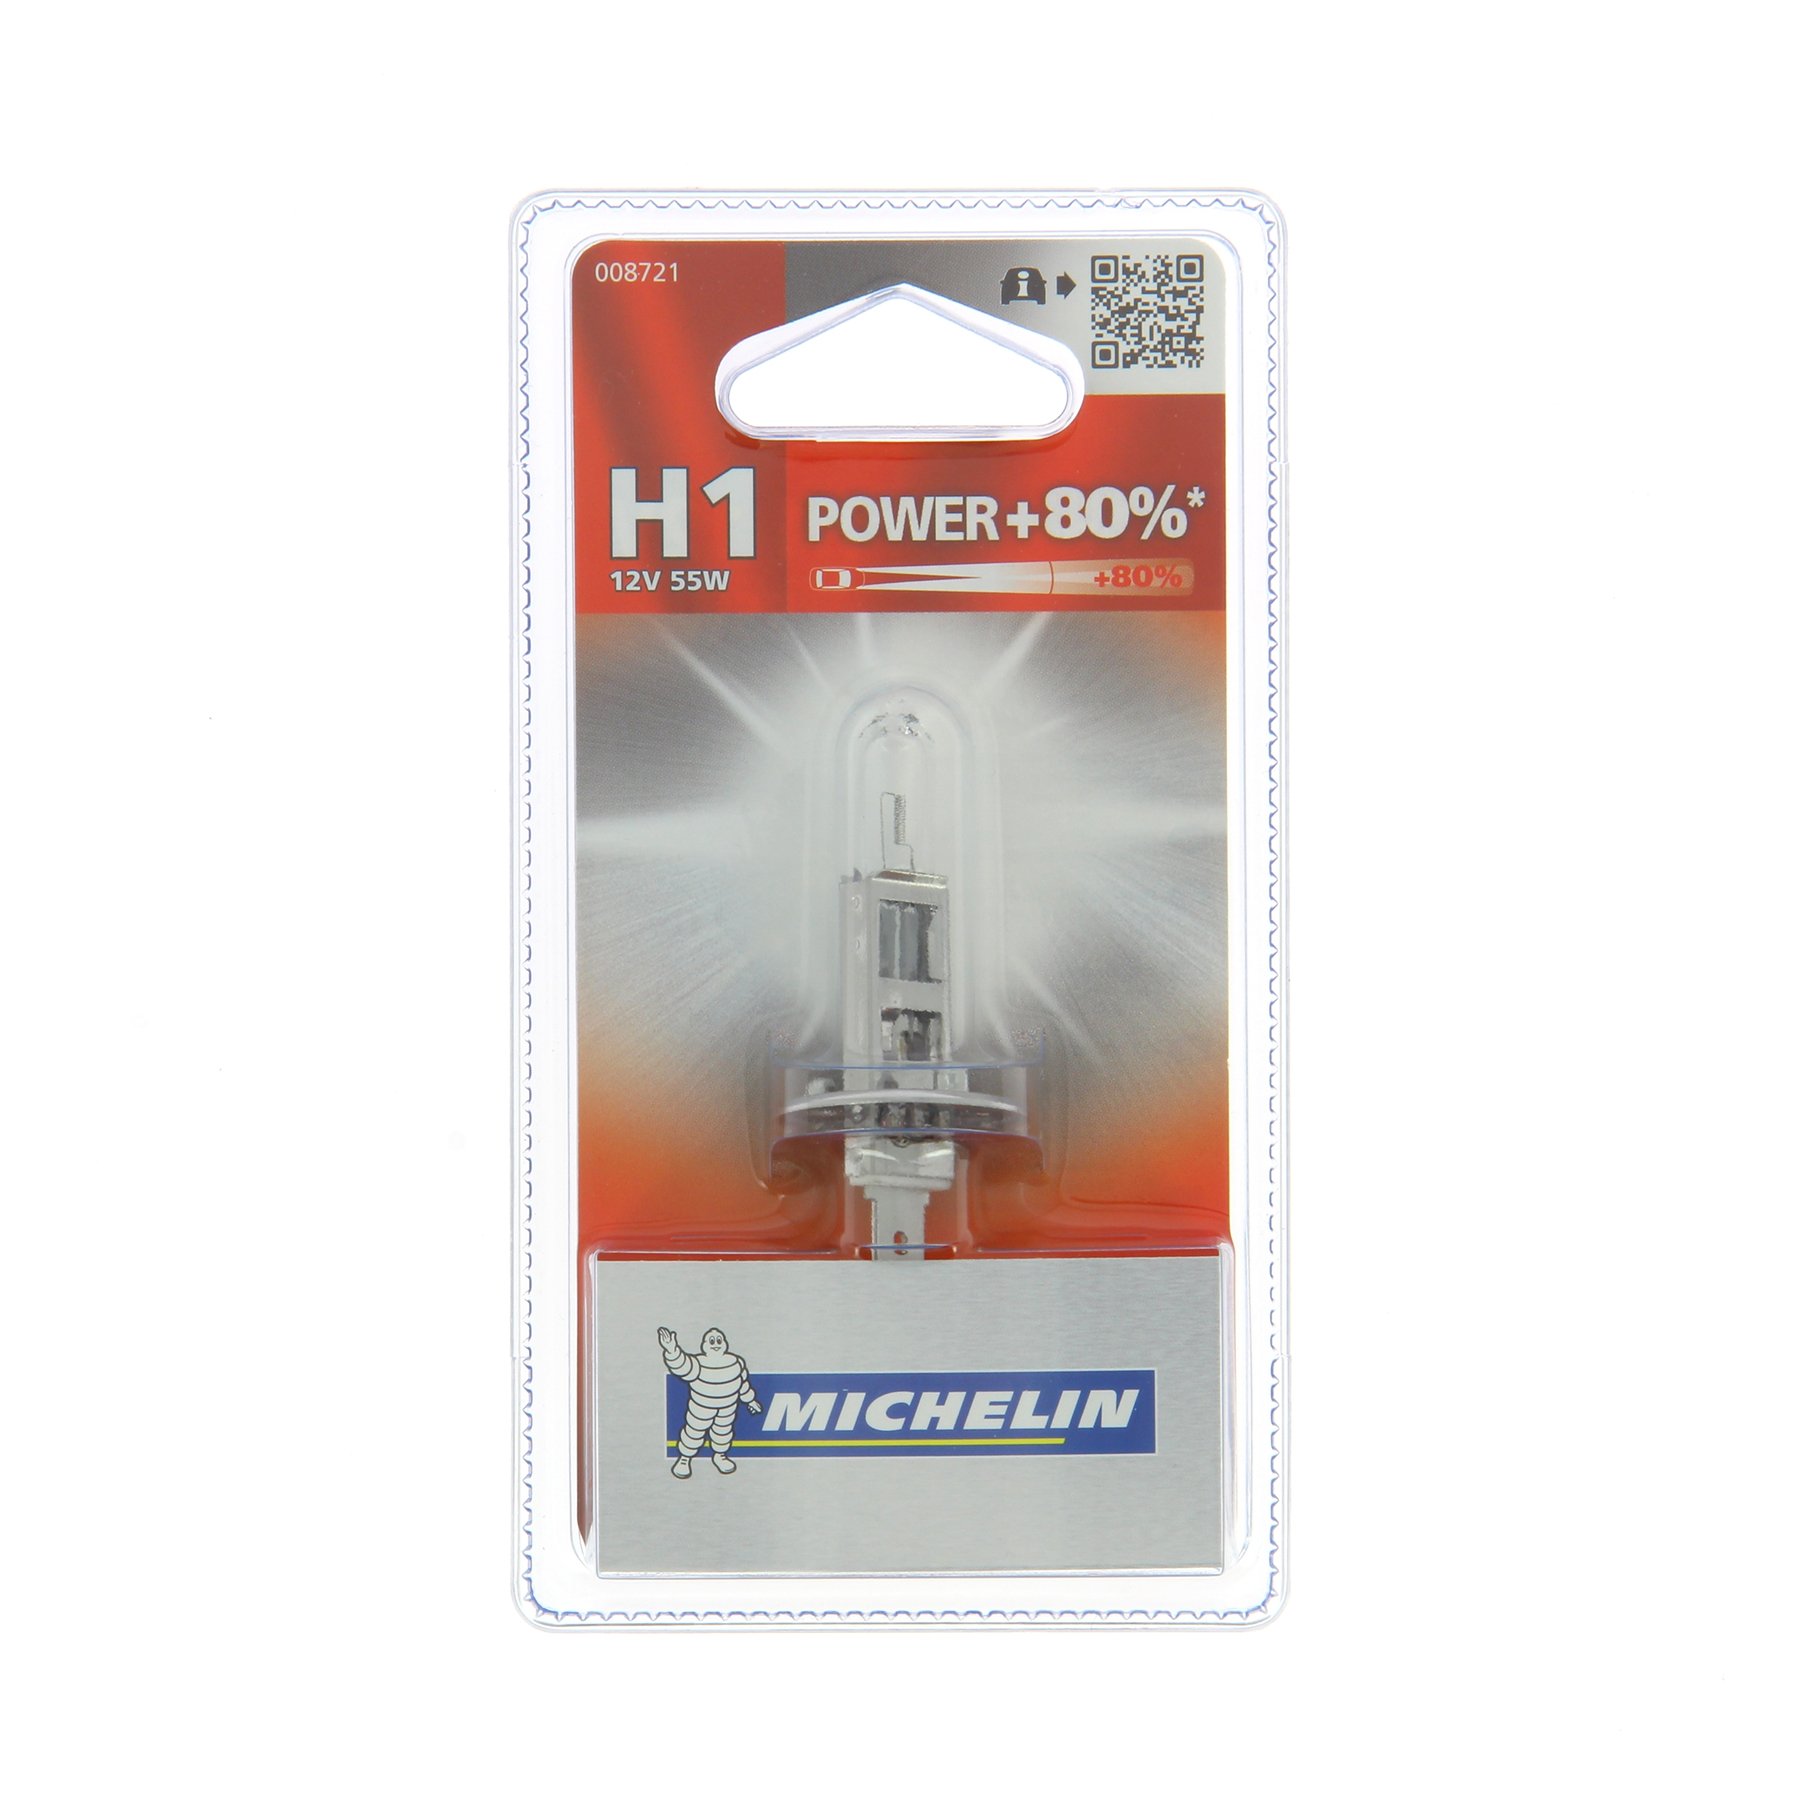 MICHELIN 008721 Power +80% 1 Leuchtmittel H1 12V 55W von MICHELIN